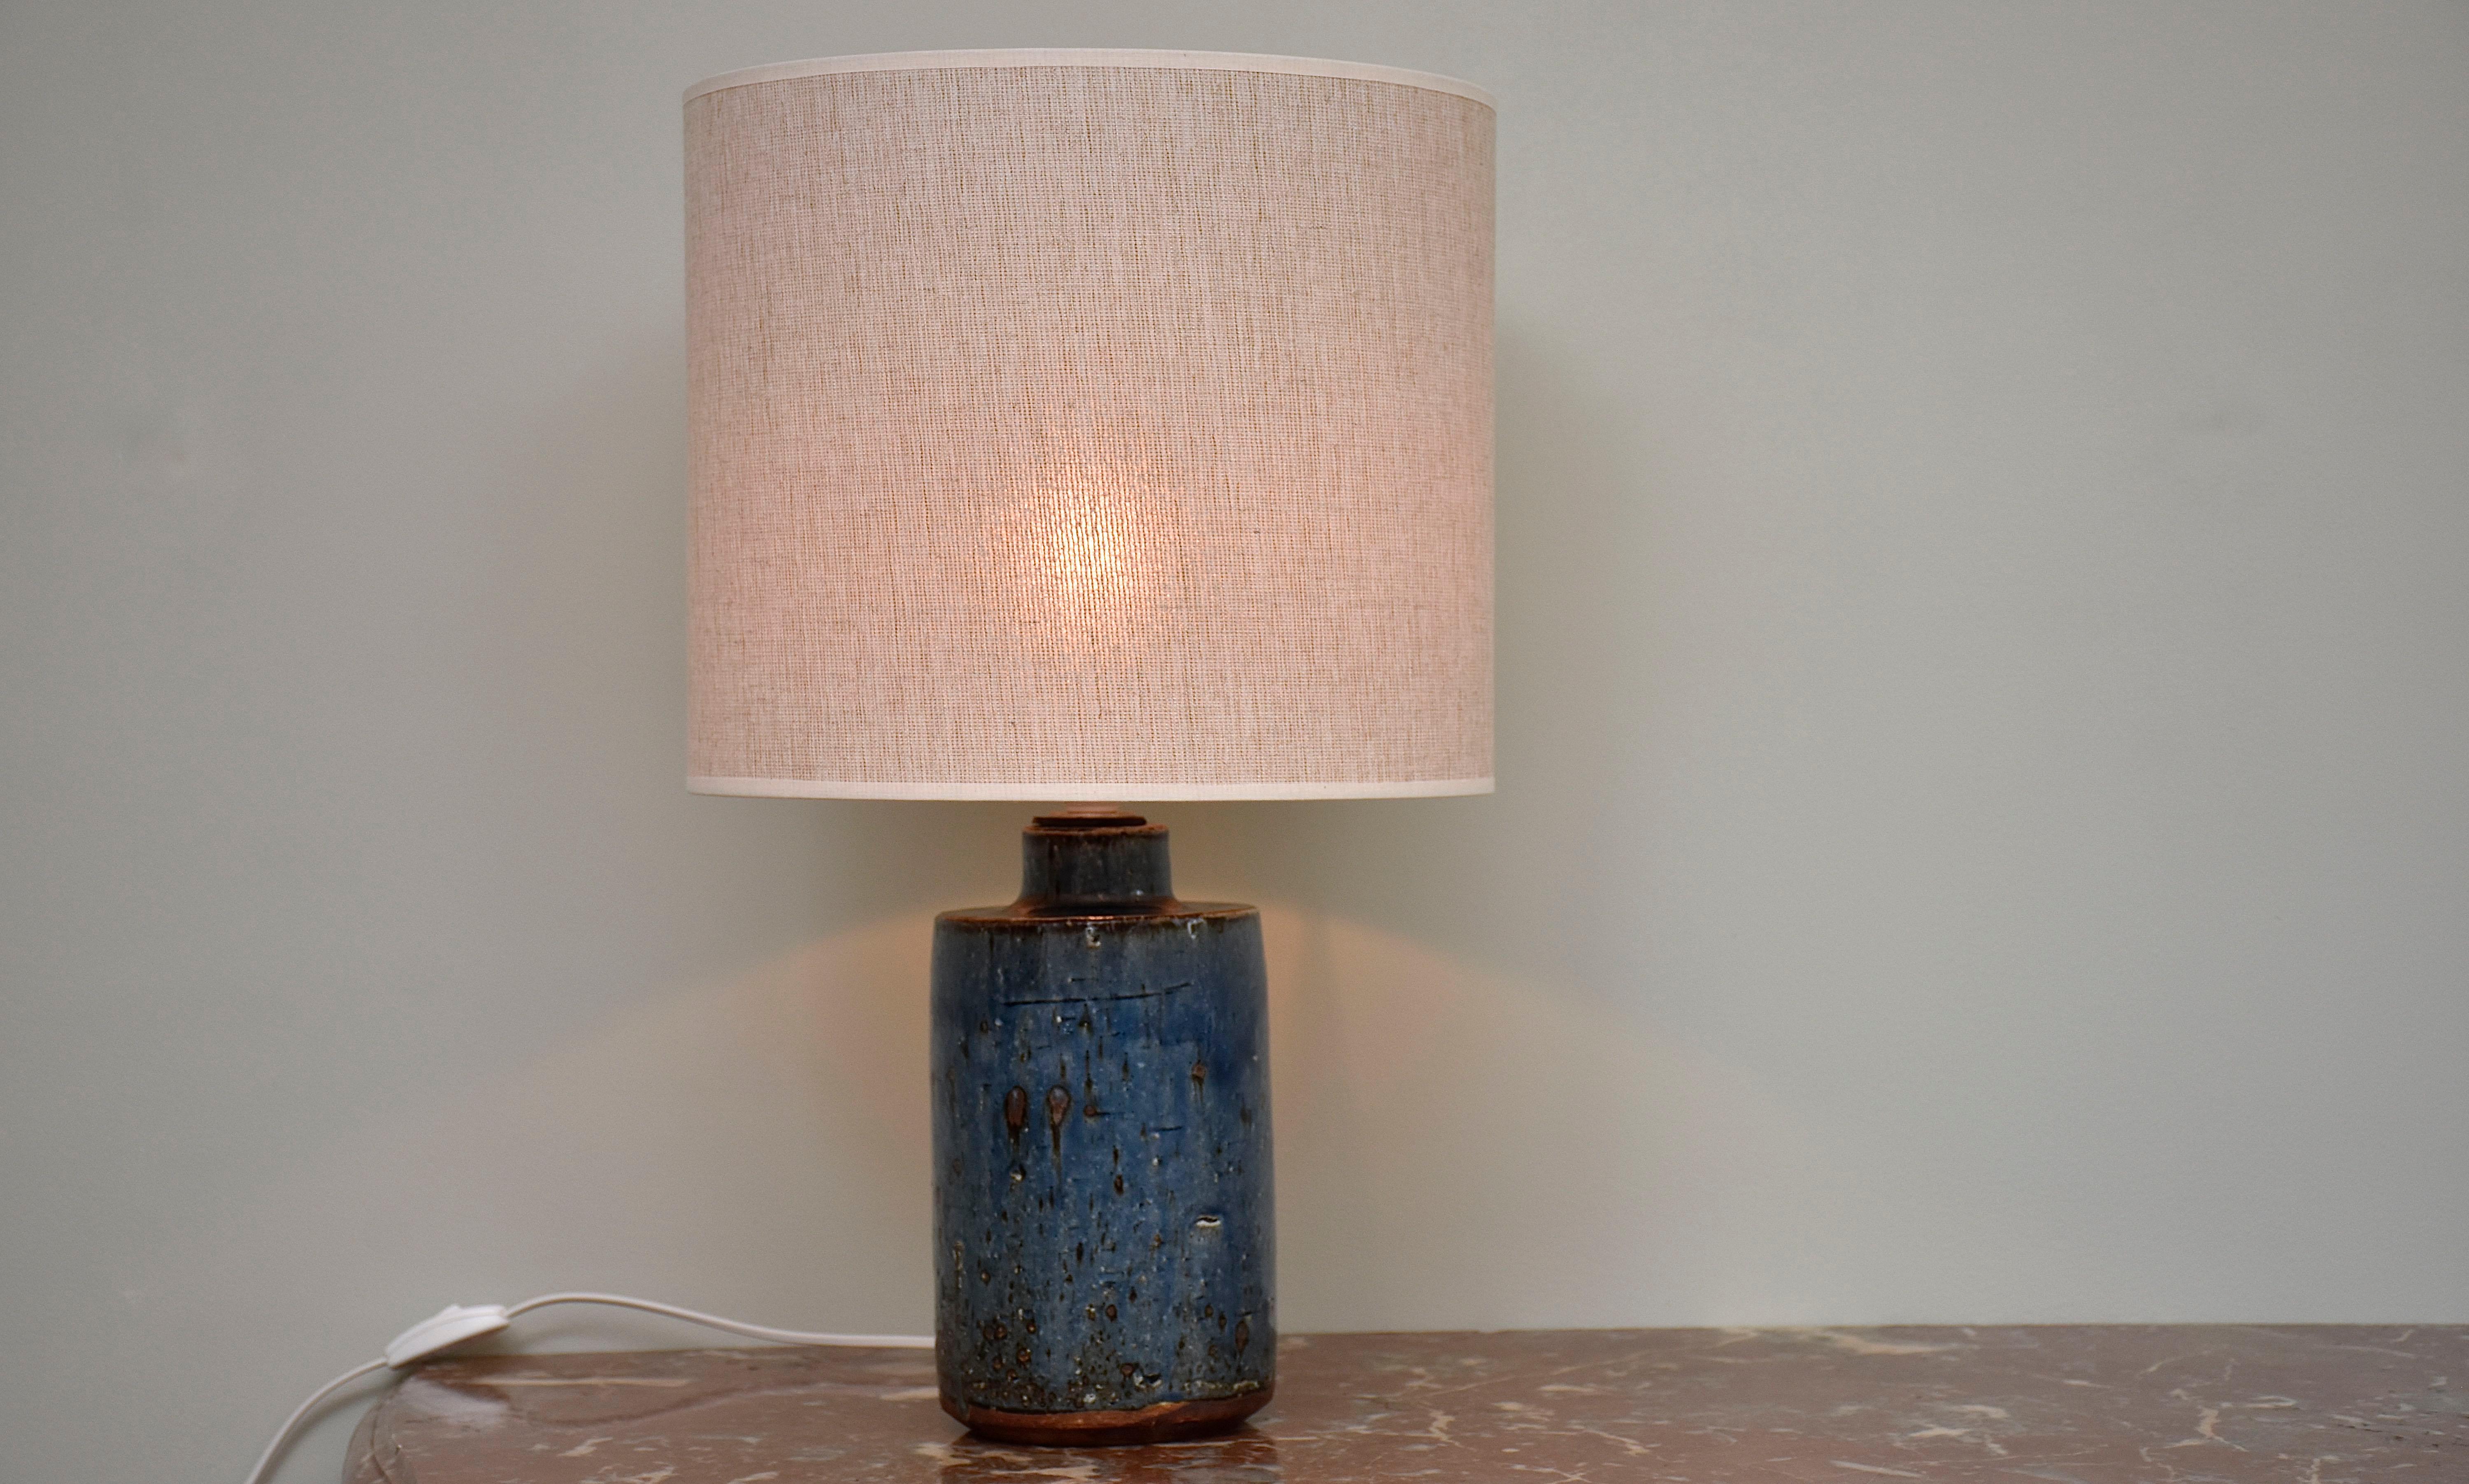 Une magnifique lampe de table en grès bleu conçue et fabriquée à la main par Marianne Westmann, designer et céramiste suédoise.
Cette lampe a été fabriquée pour la célèbre usine de céramique Rorstrand en Suède.
Avec 1x lumière.
Signé en